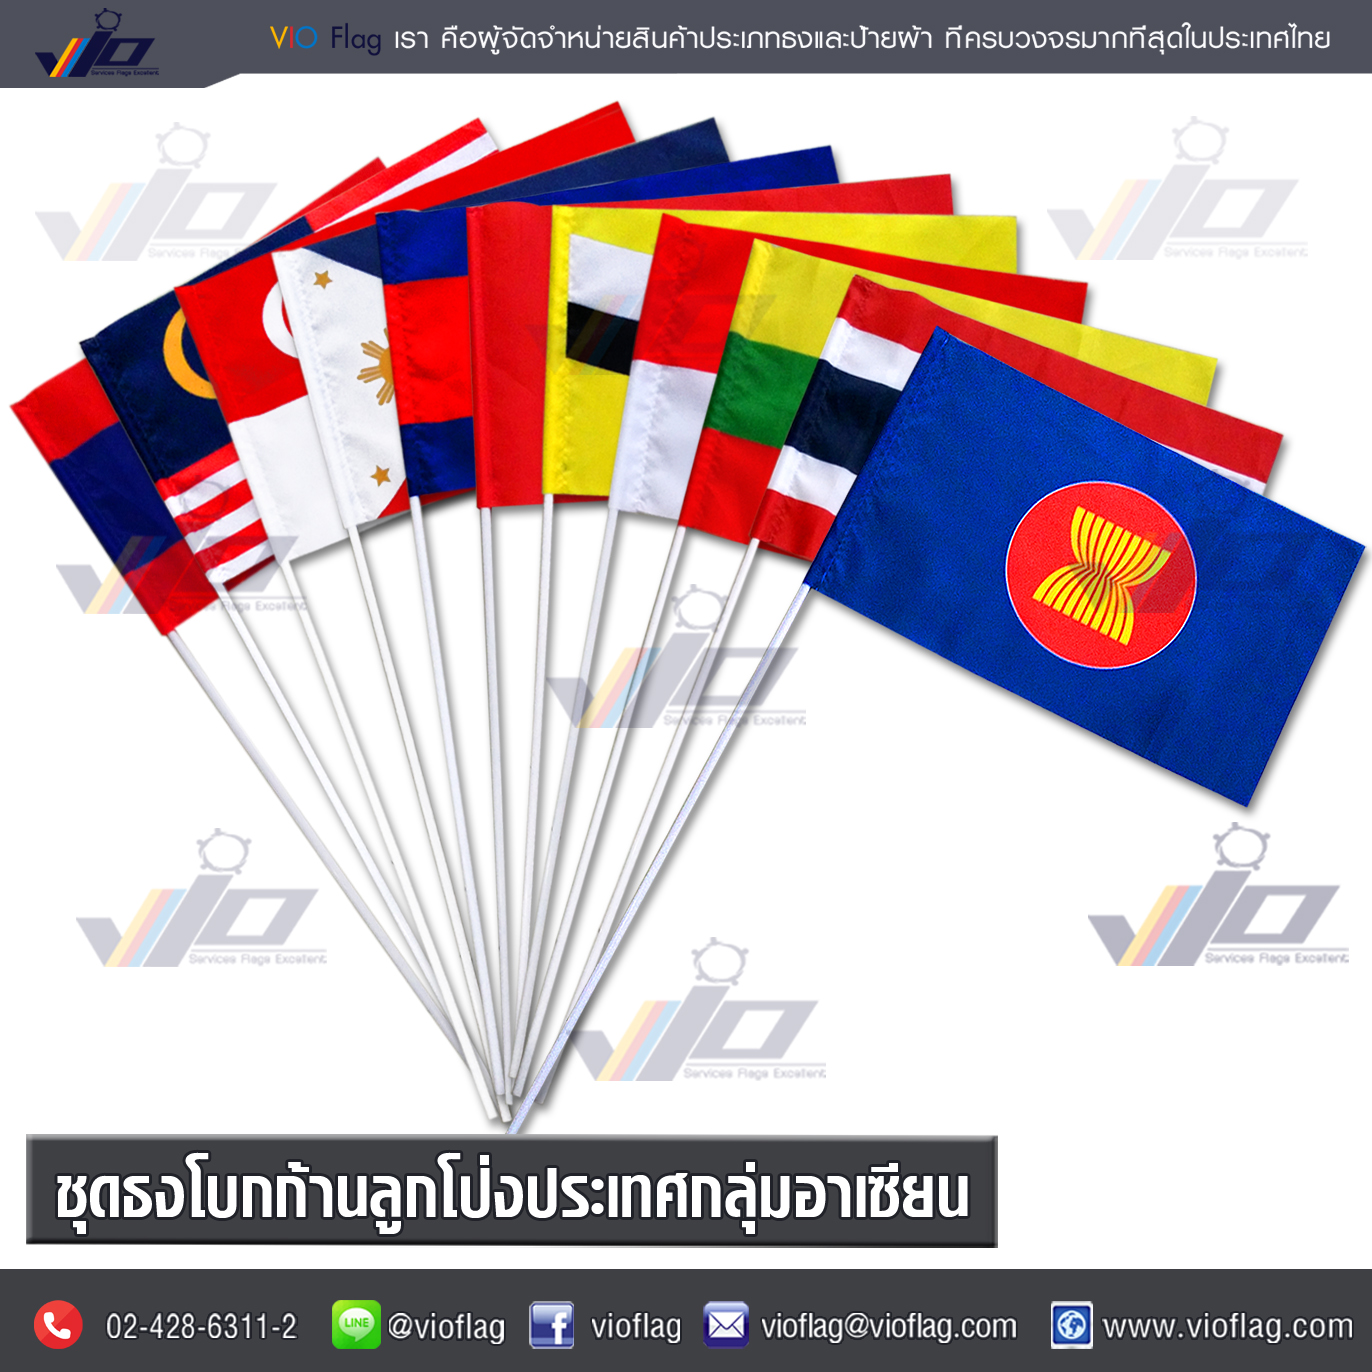 VIO FLAG จำหน่ายชุดธงโบกก้านลูกโป่งประเทศกลุ่มอาเซียน / AEC Flag 1 ชุดมี 11 ผืนธง